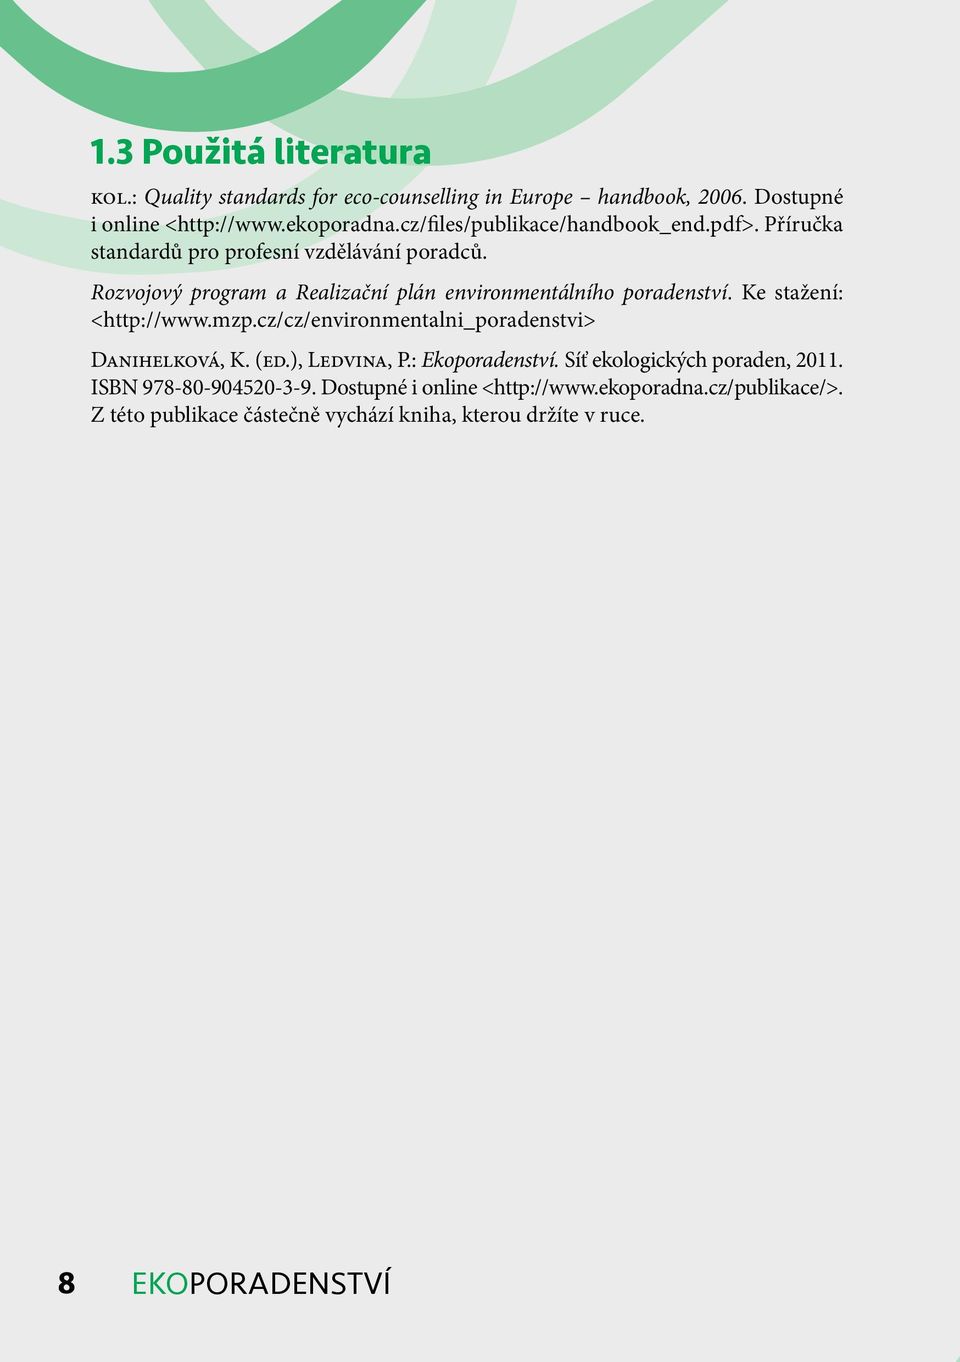 Rozvojový program a Realizační plán environmentálního poradenství. Ke stažení: <http://www.mzp.cz/cz/environmentalni_poradenstvi> Danihelková, K. (ed.